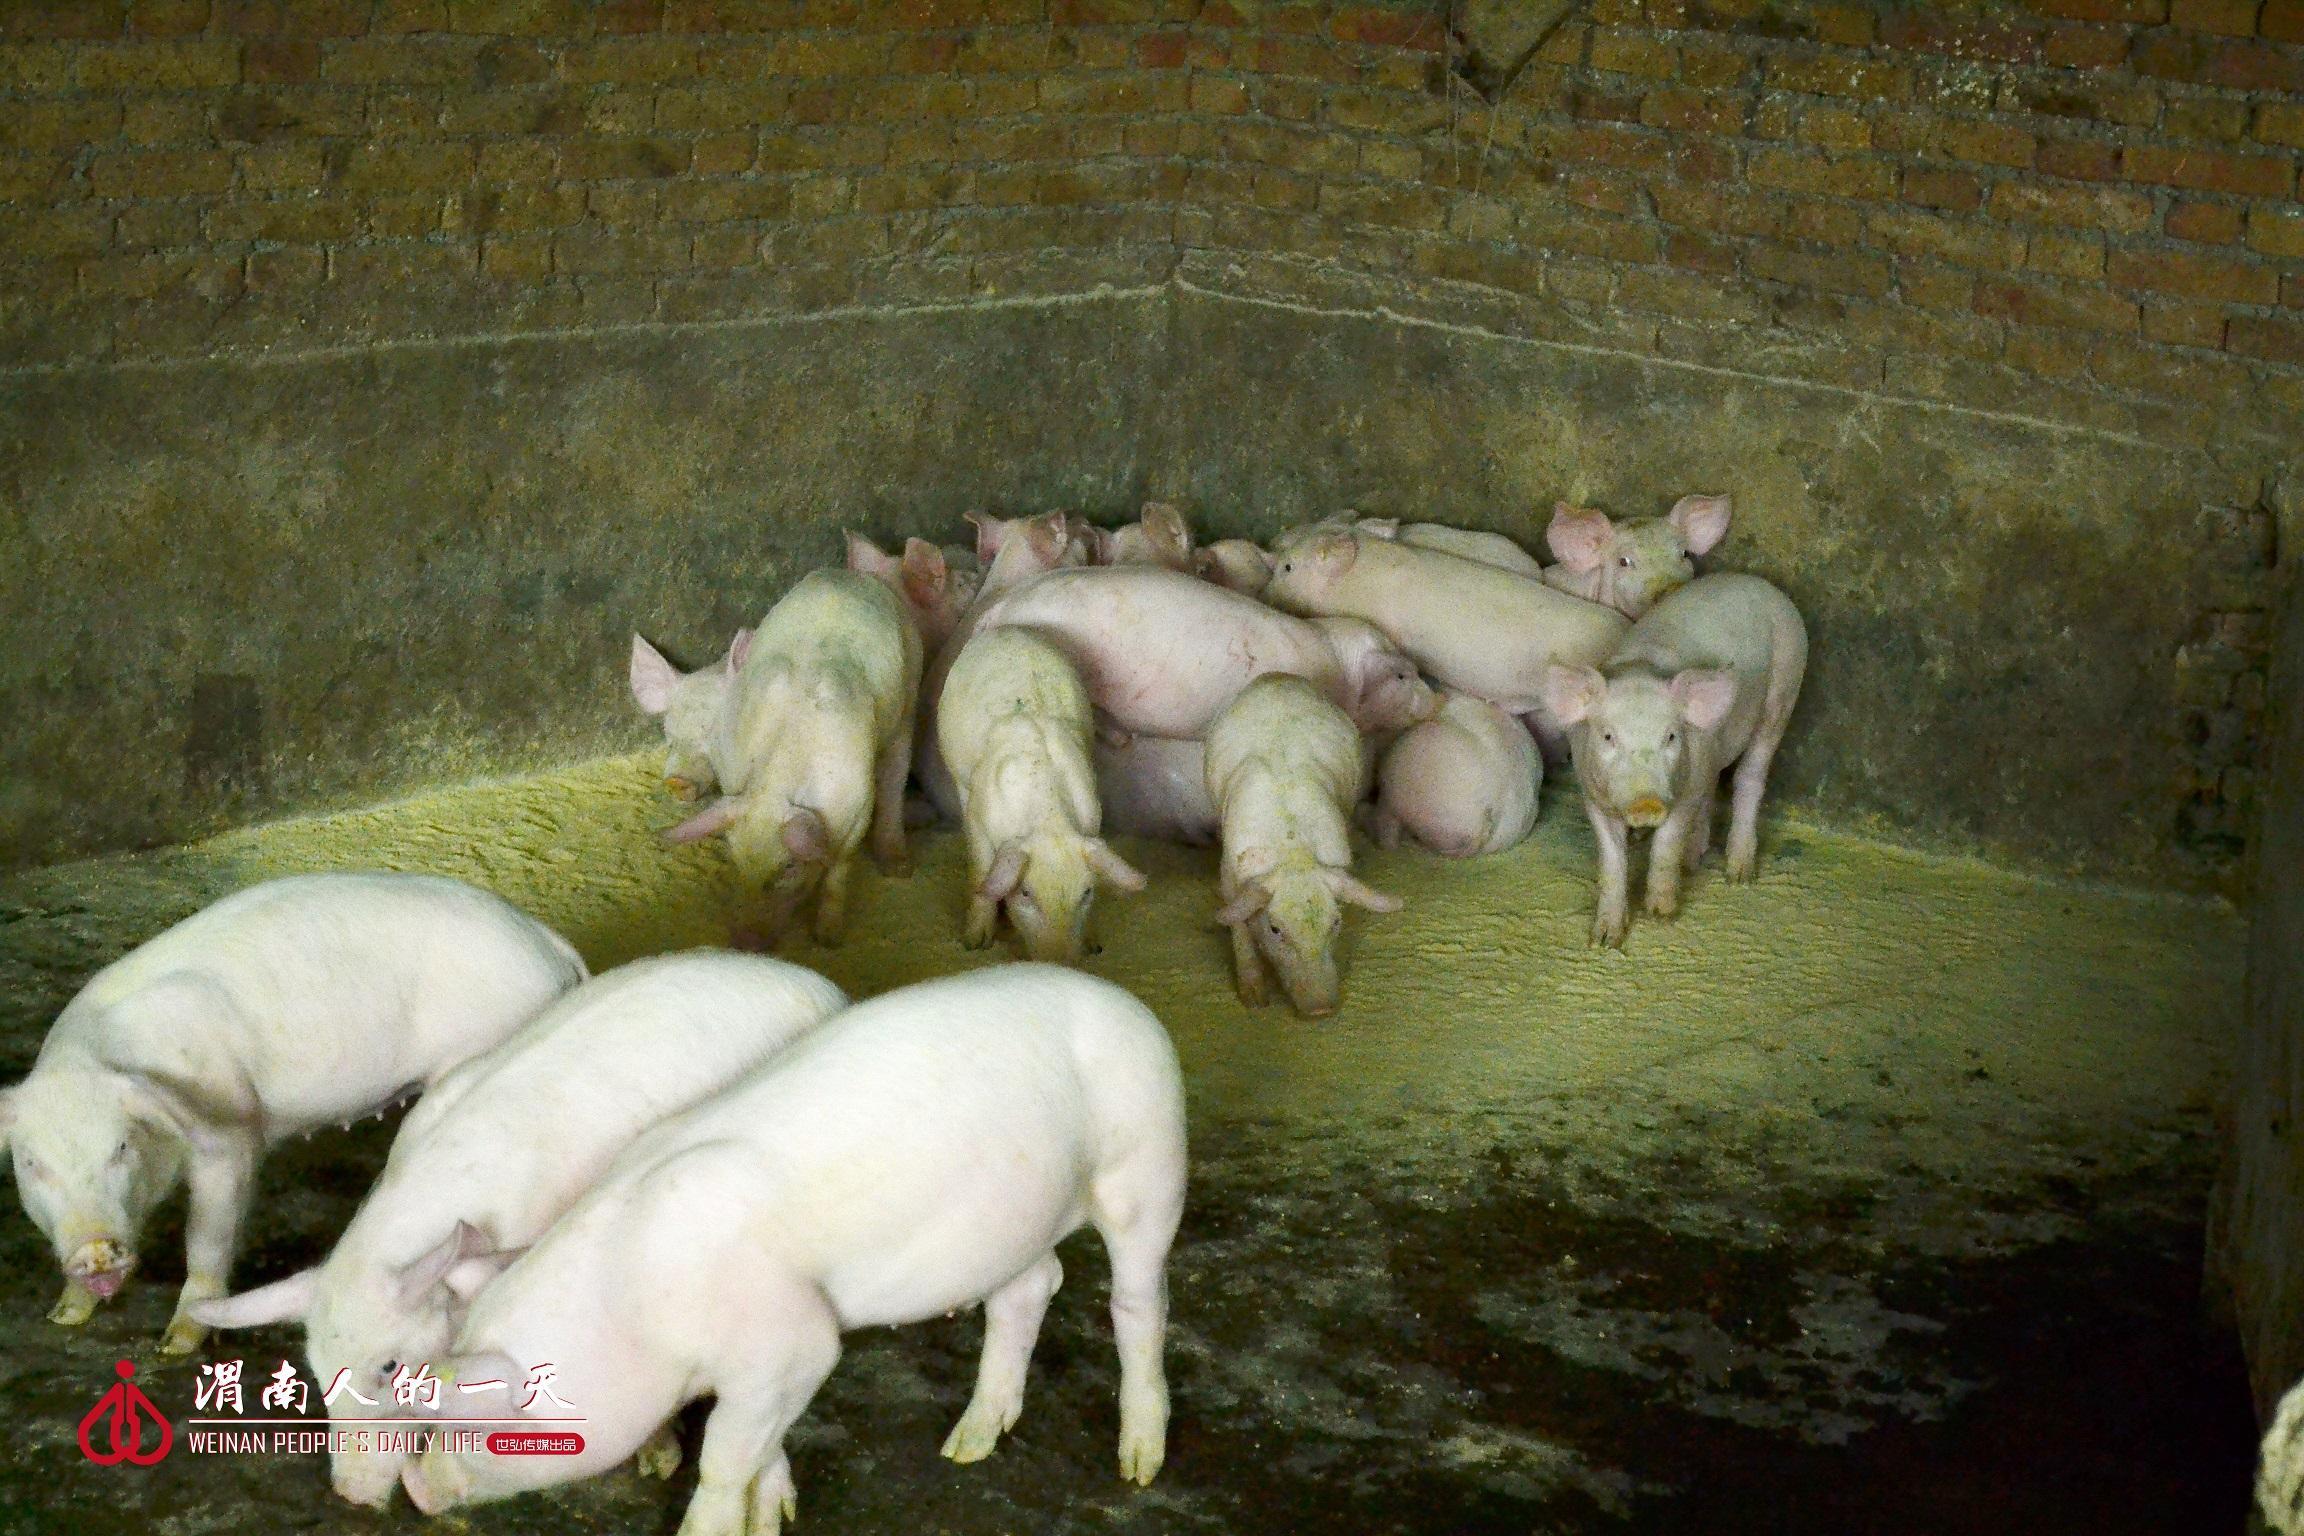 夫妻经营家庭养猪场,曾因一场瘟疫面临艰难选择